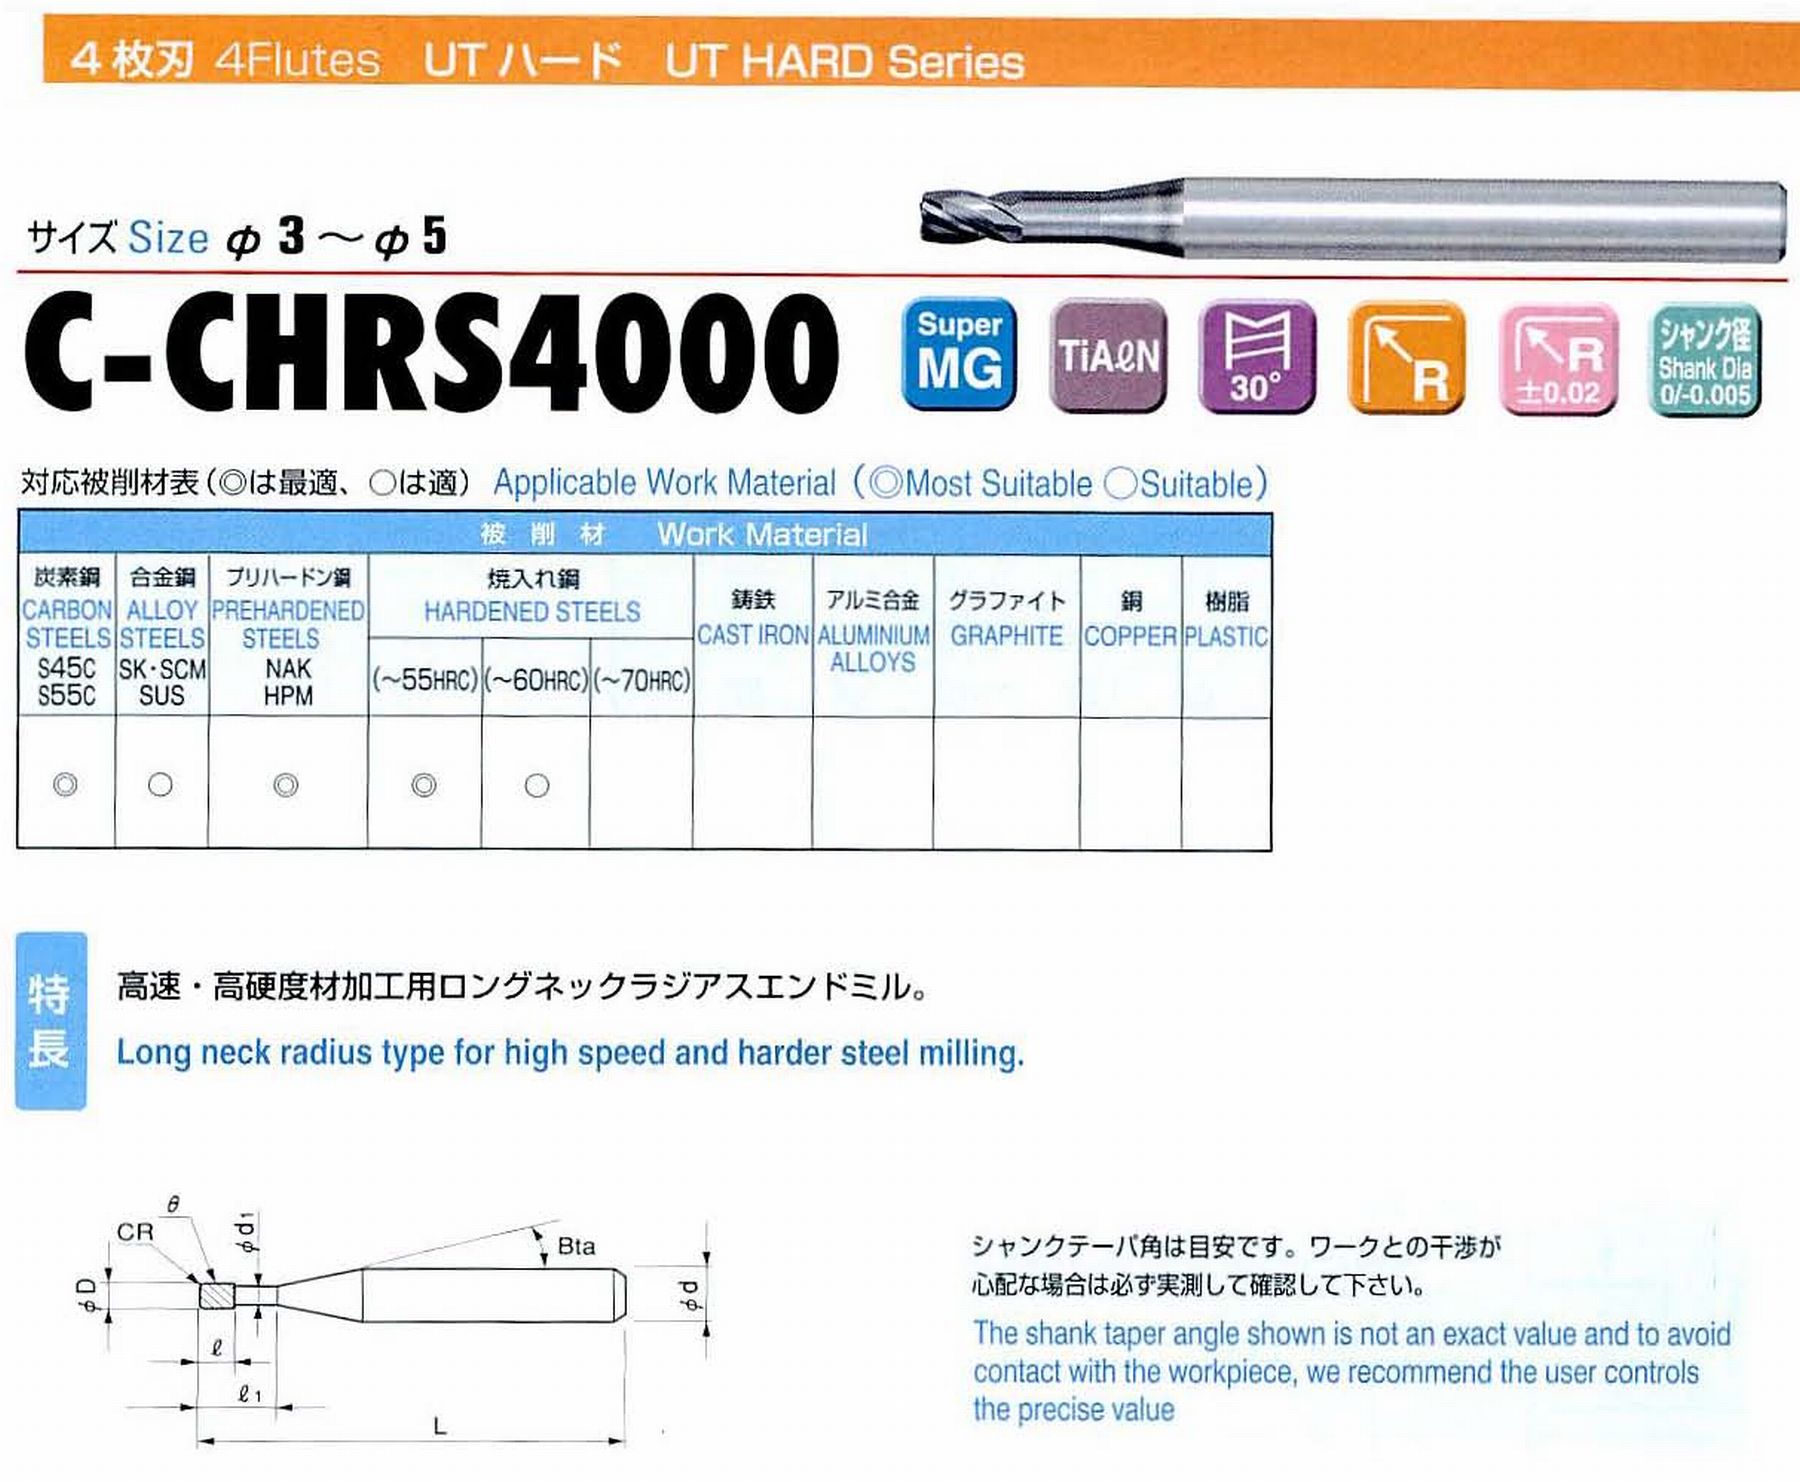 ユニオンツール 4枚刃 C-CHRS4050-02-160 外径5 コーナ半径R0.2 有効長16 刃長5 首径4.91 シャンクテーパ角11° 全長60 シャンク径6